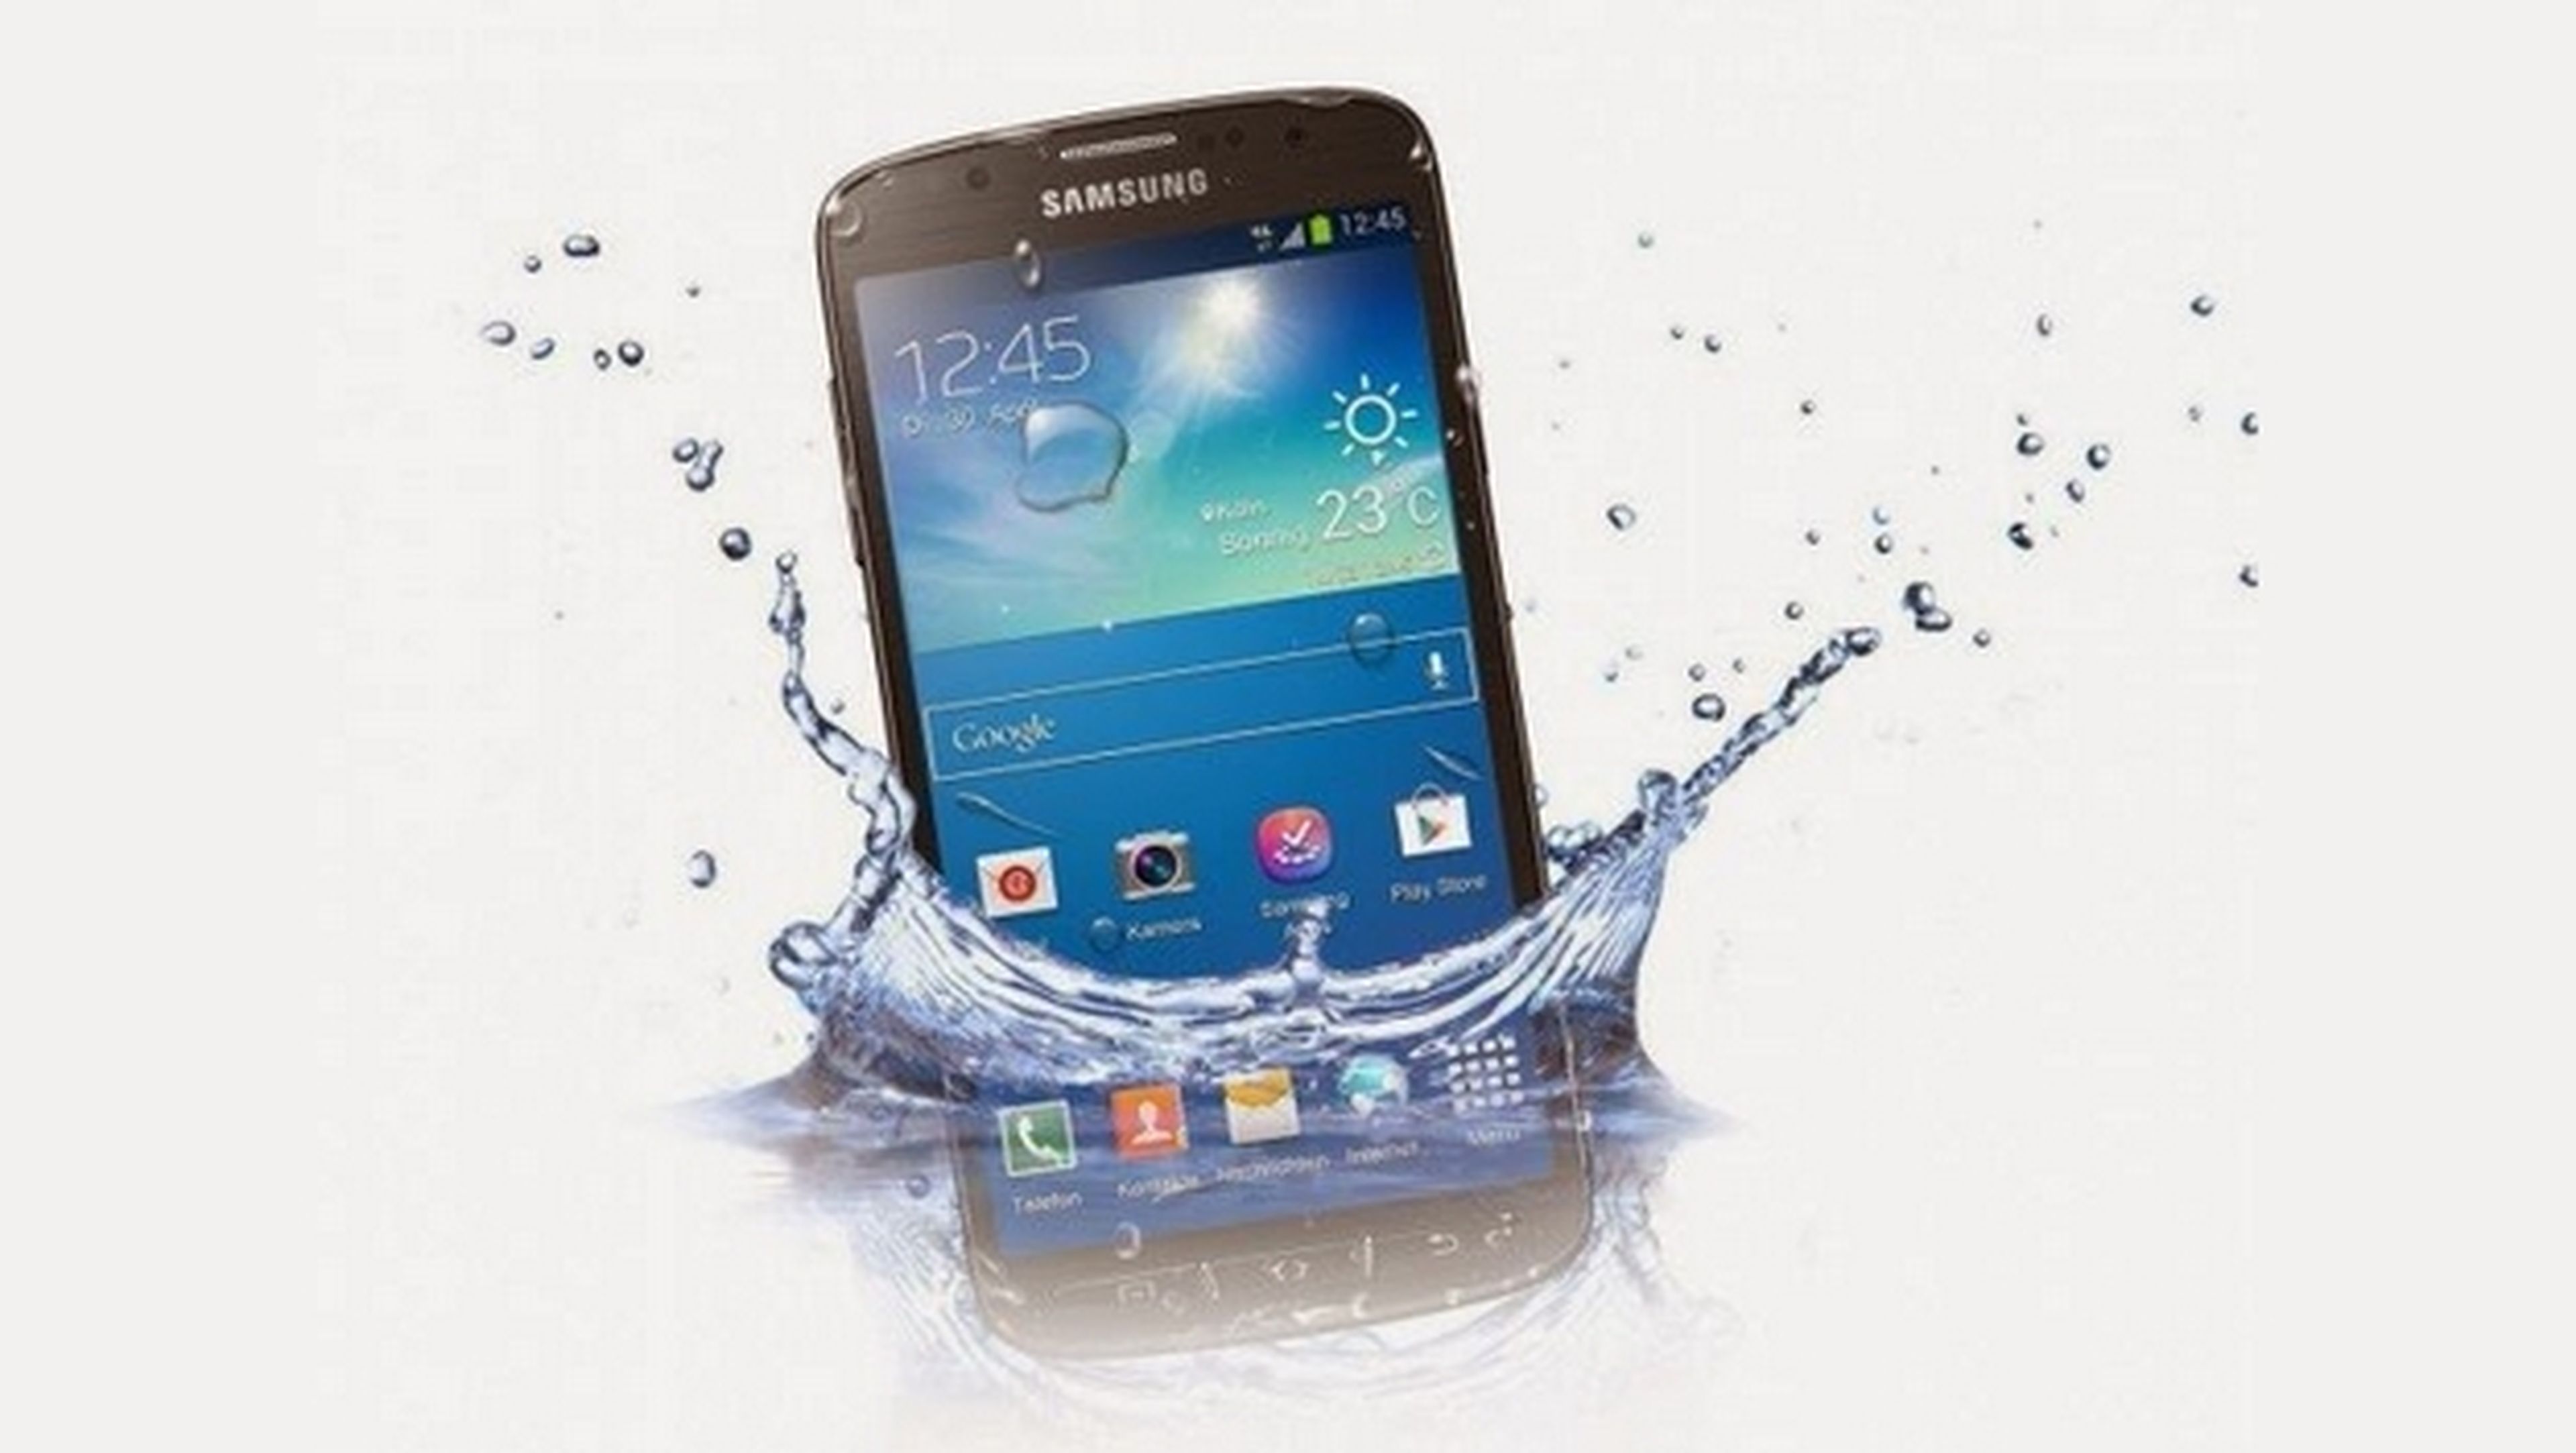 Samsung confirma la existencia de Samsung Galaxy S5 Mini, será resistente al agua y al polvo con la certificación IP67